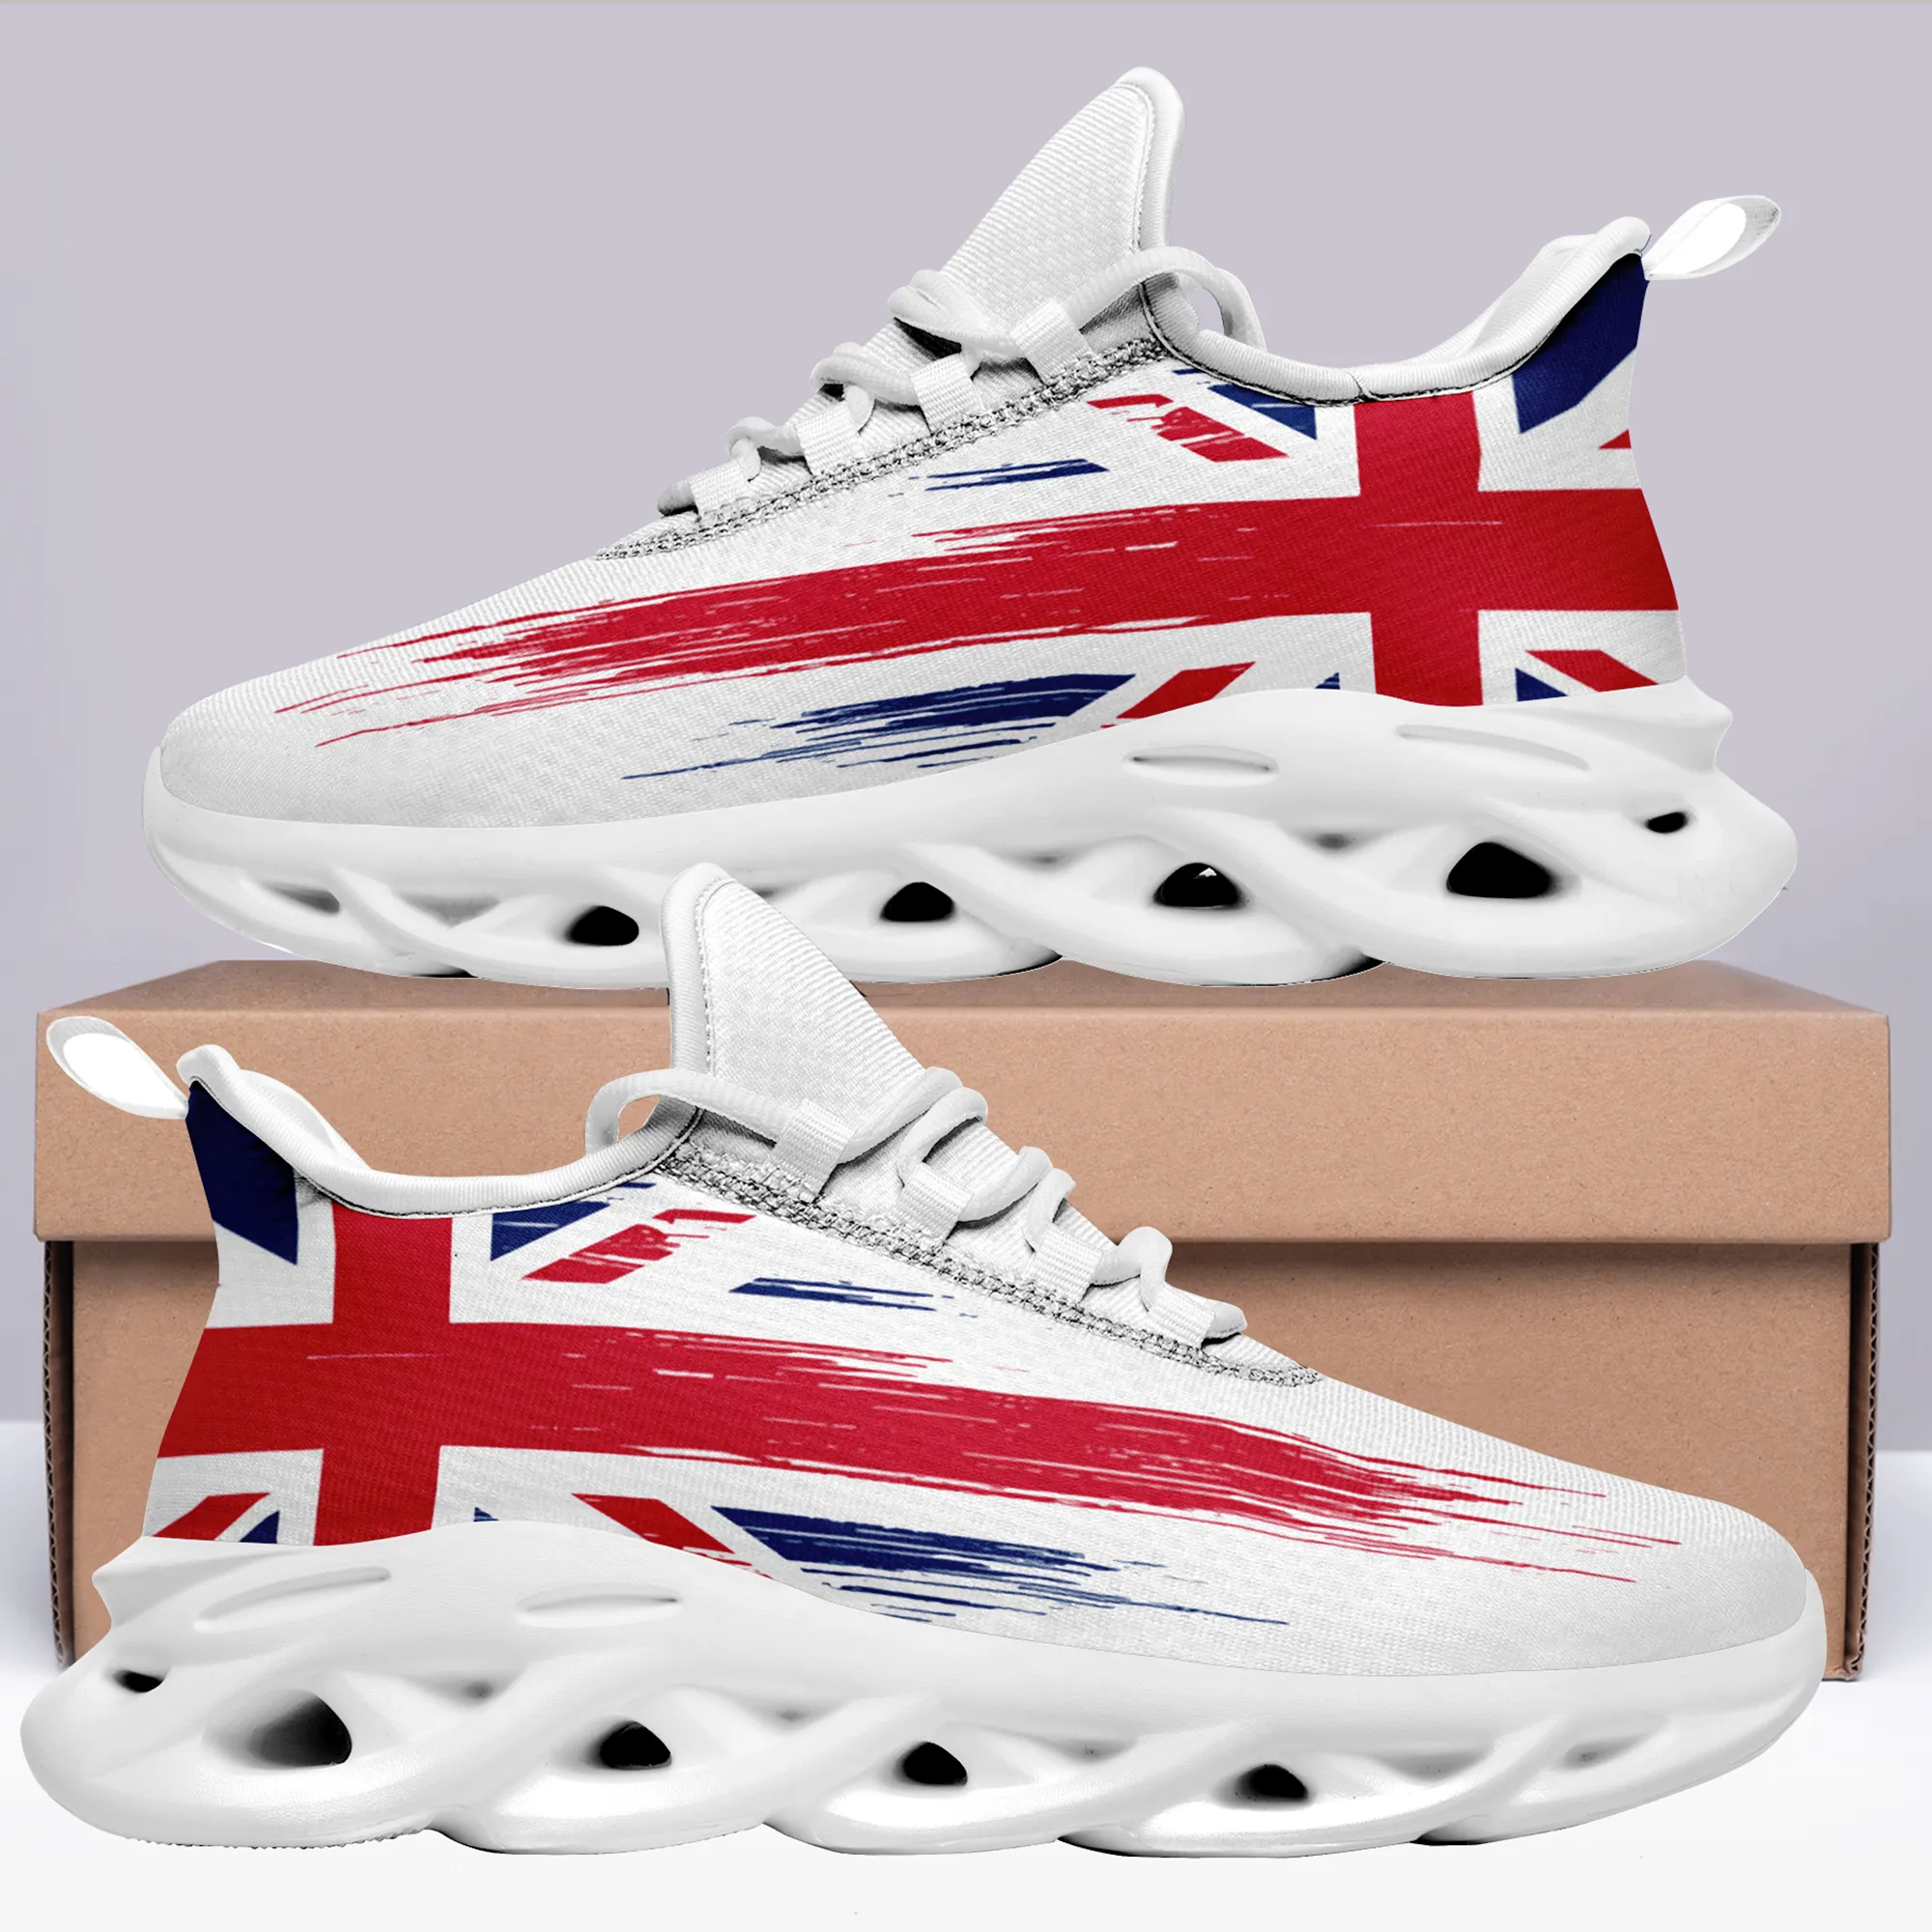 Coolcustomize Англия патриотический флаг Великобритании кроссовки для бега и тенниса подарок для друга персонализированные легкие удобные модные кроссовки унисекс на шнуровке